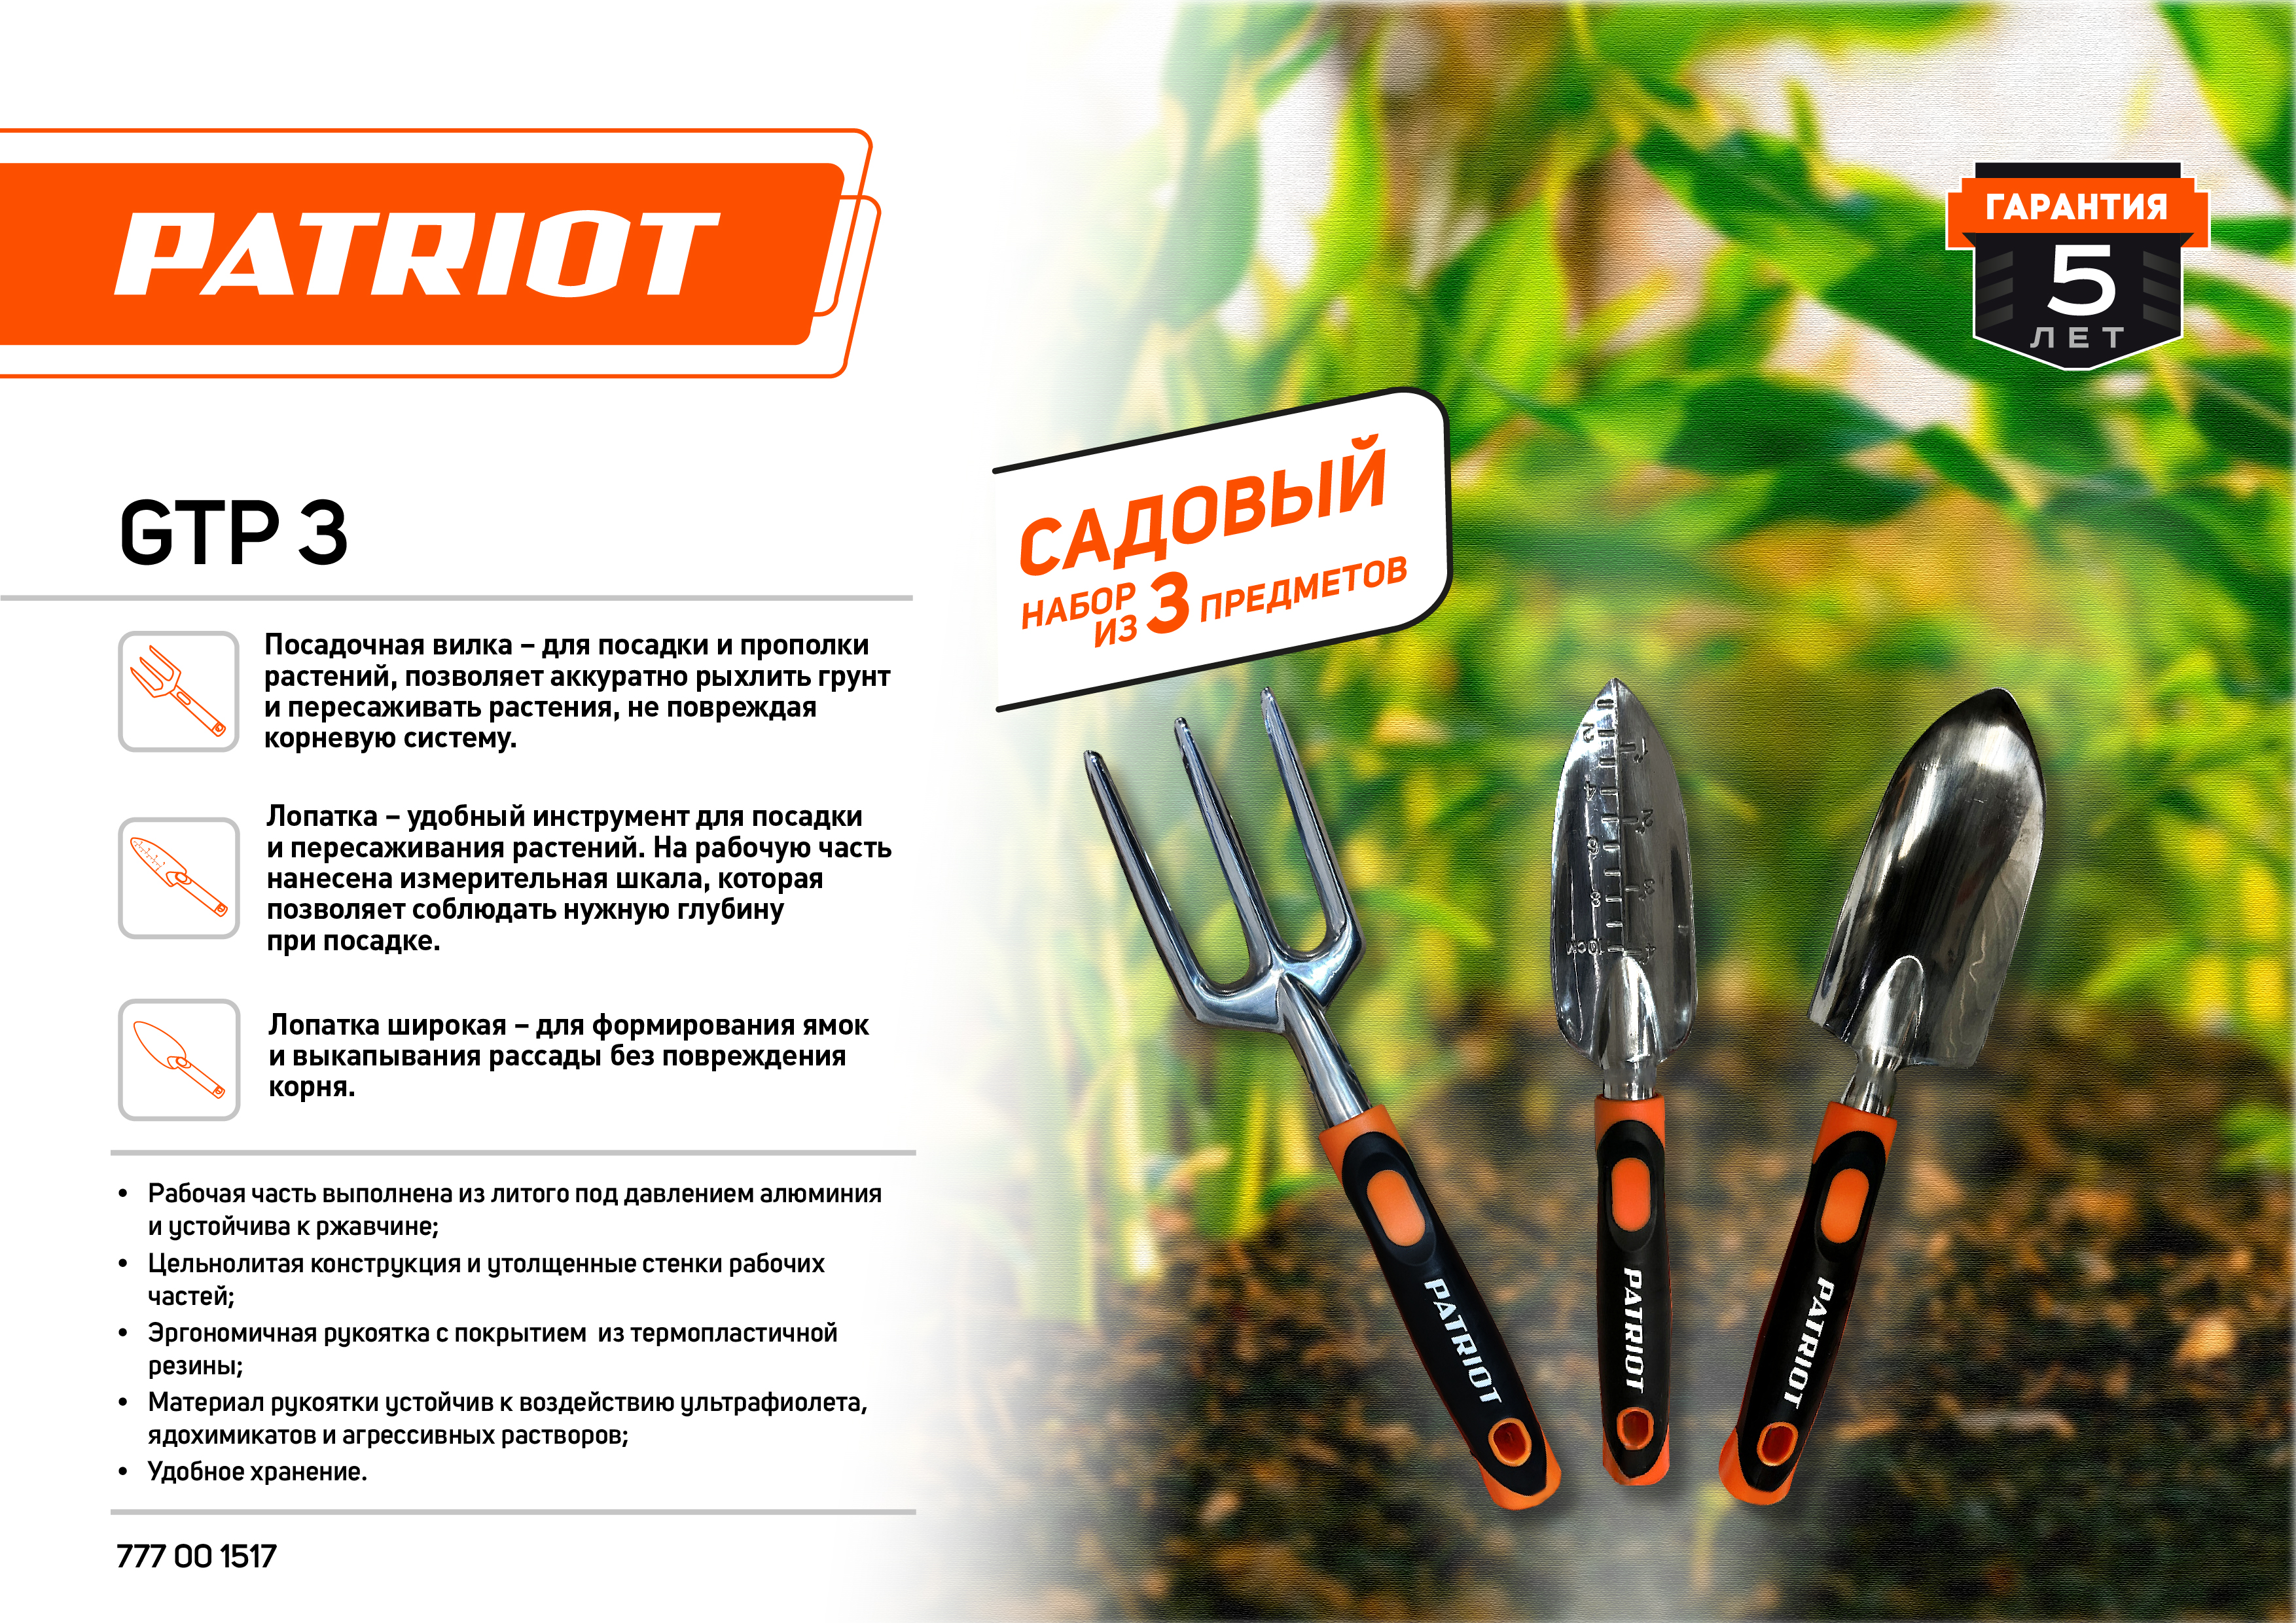 Набор садовых инструментов PATRIOT GTP 3